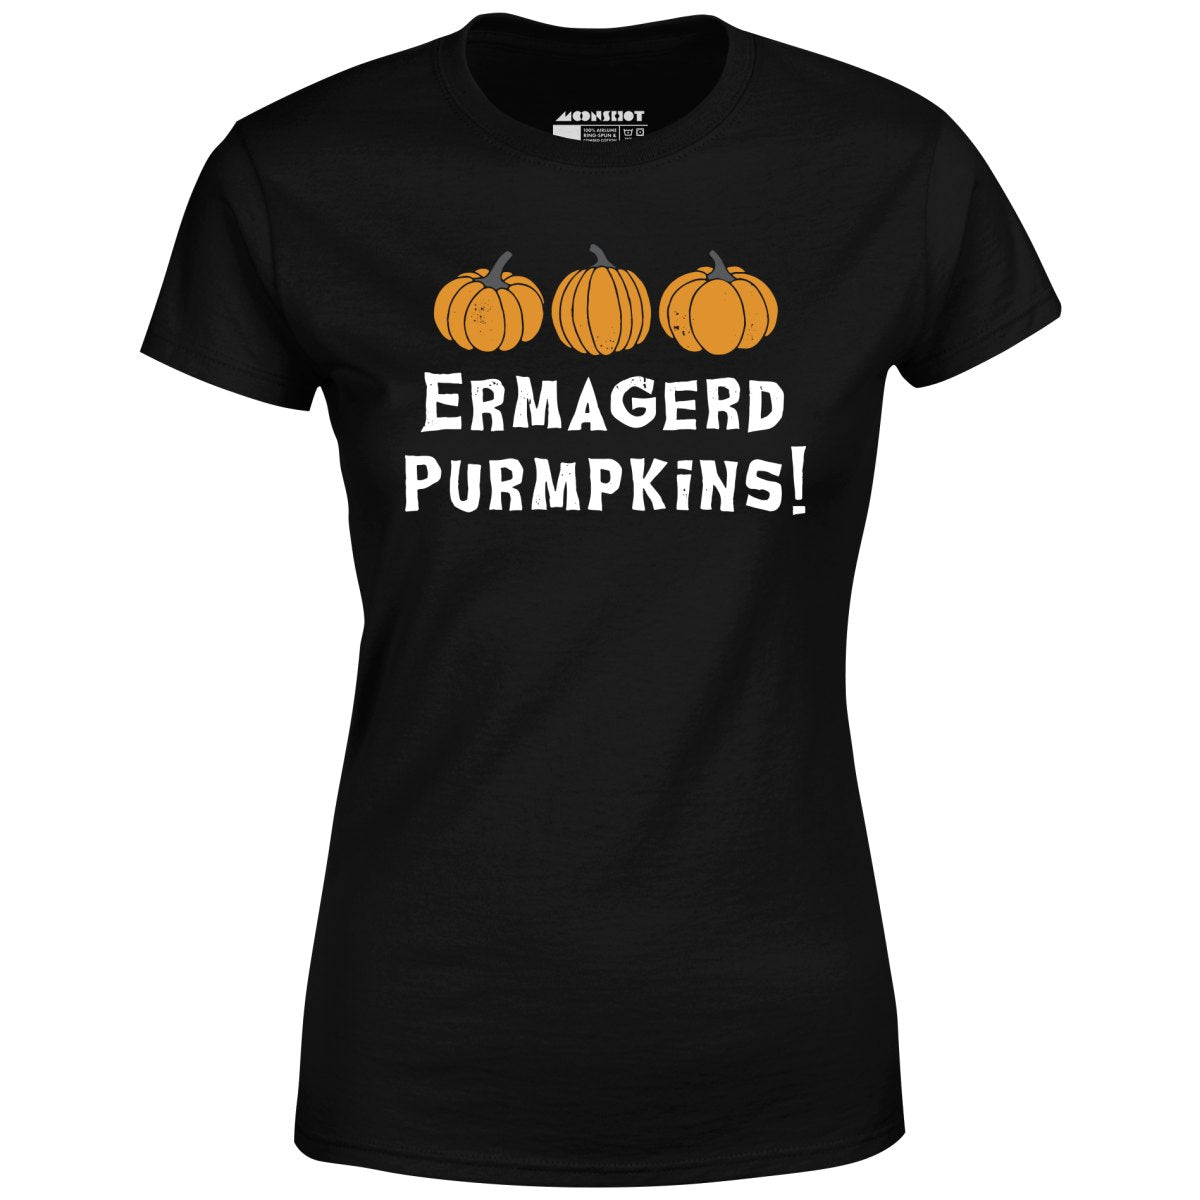 Ermagerd Purmpkins! - Women's T-Shirt